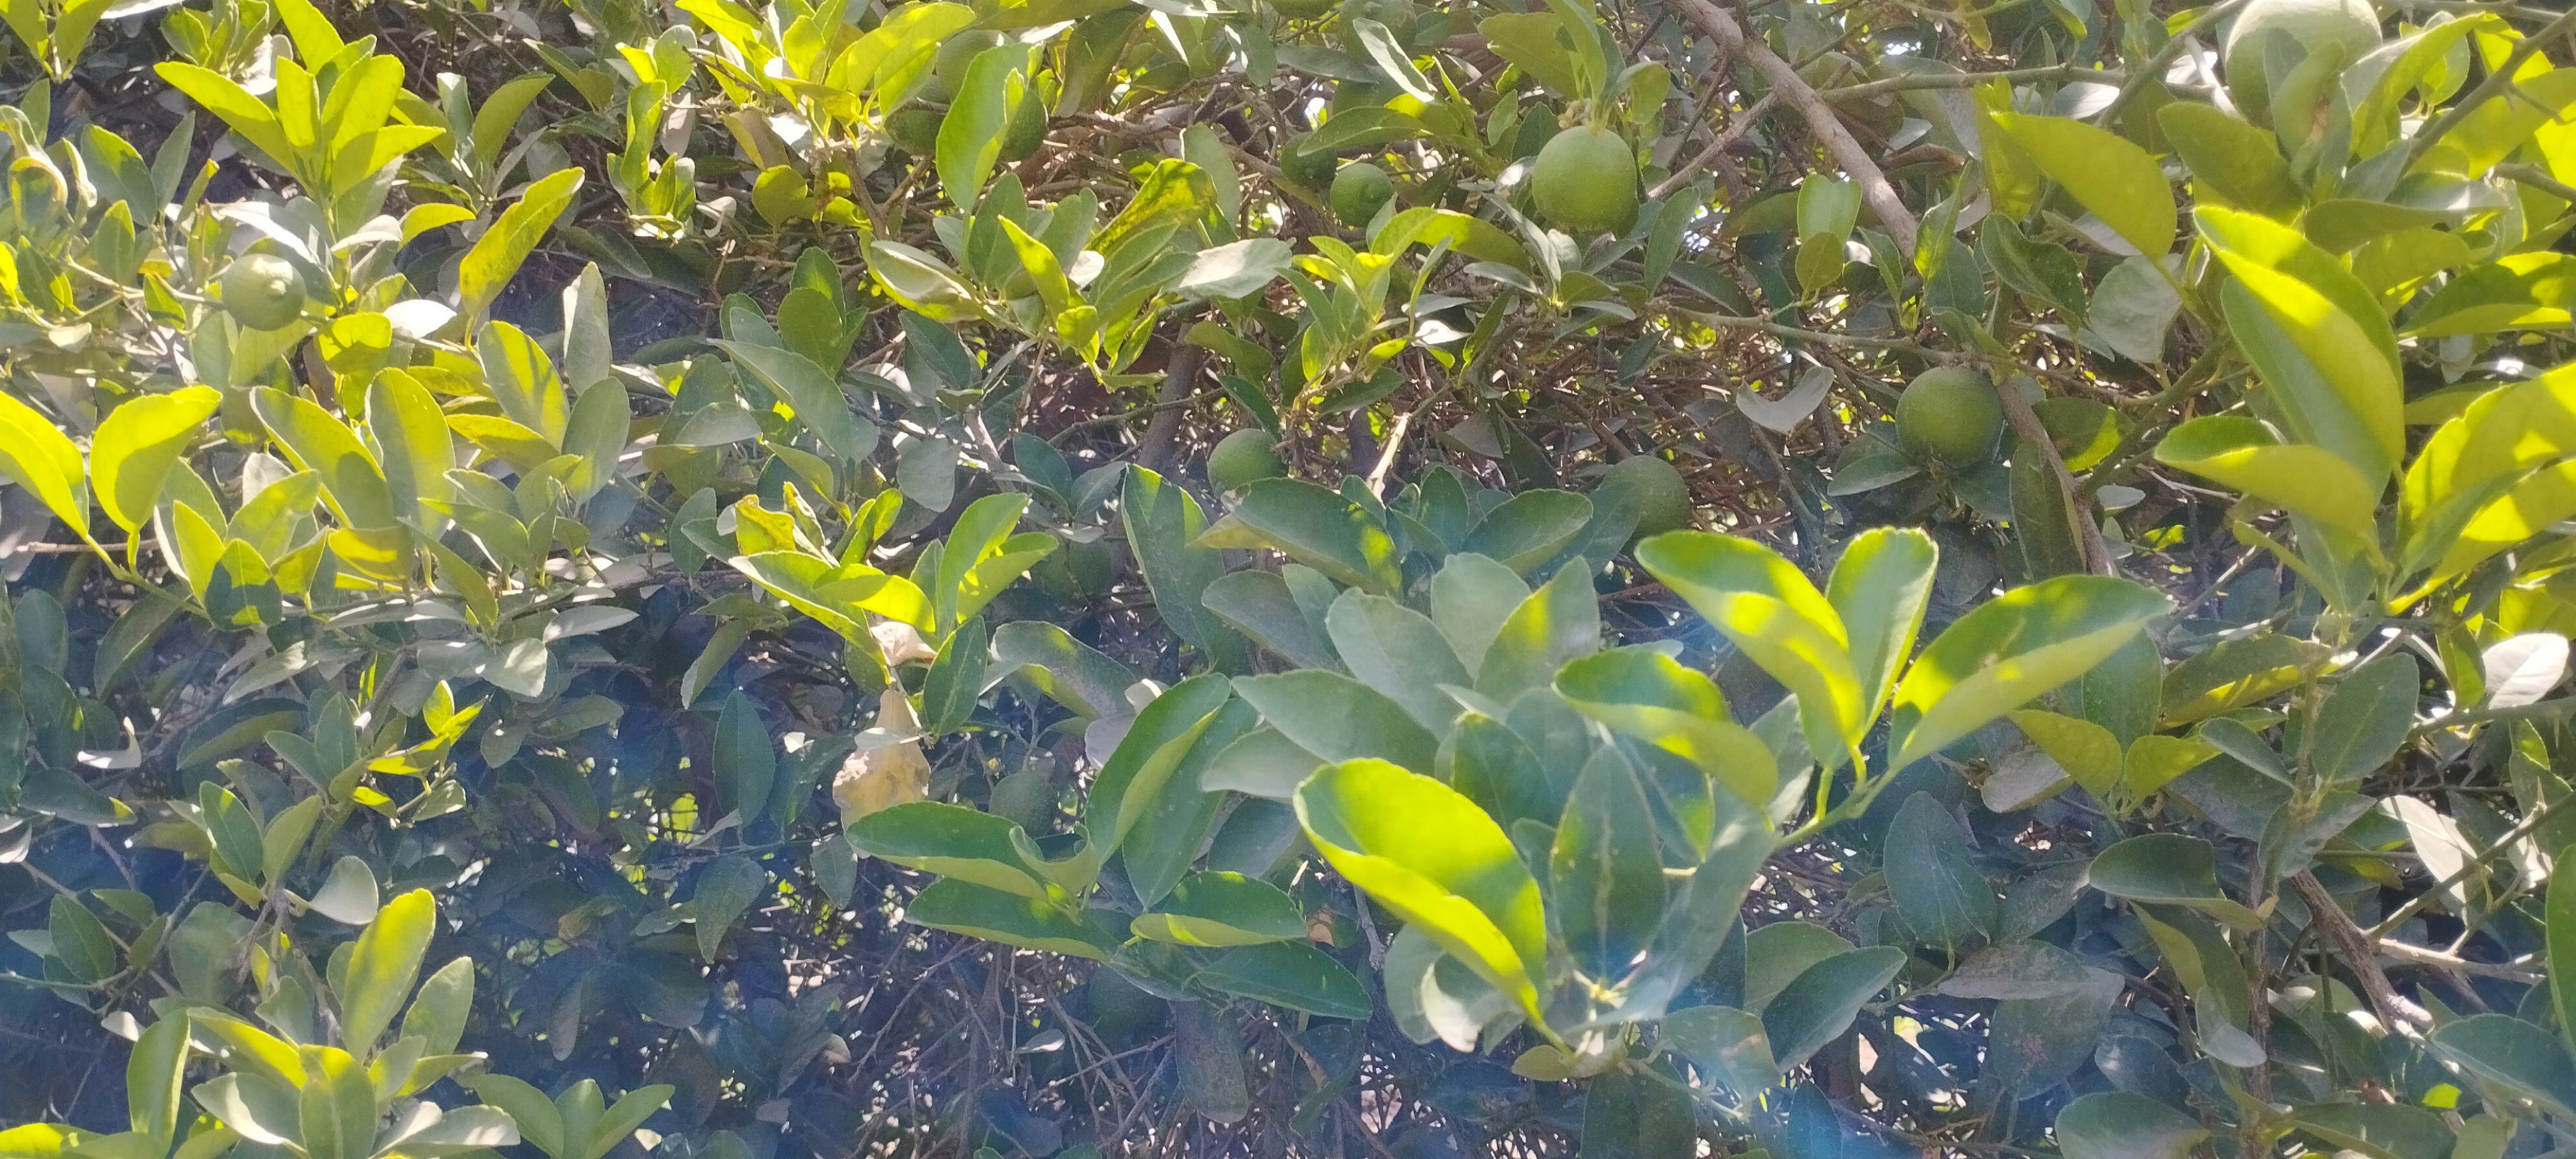 اشجار الليمون تزين مزارع المنيا (6)